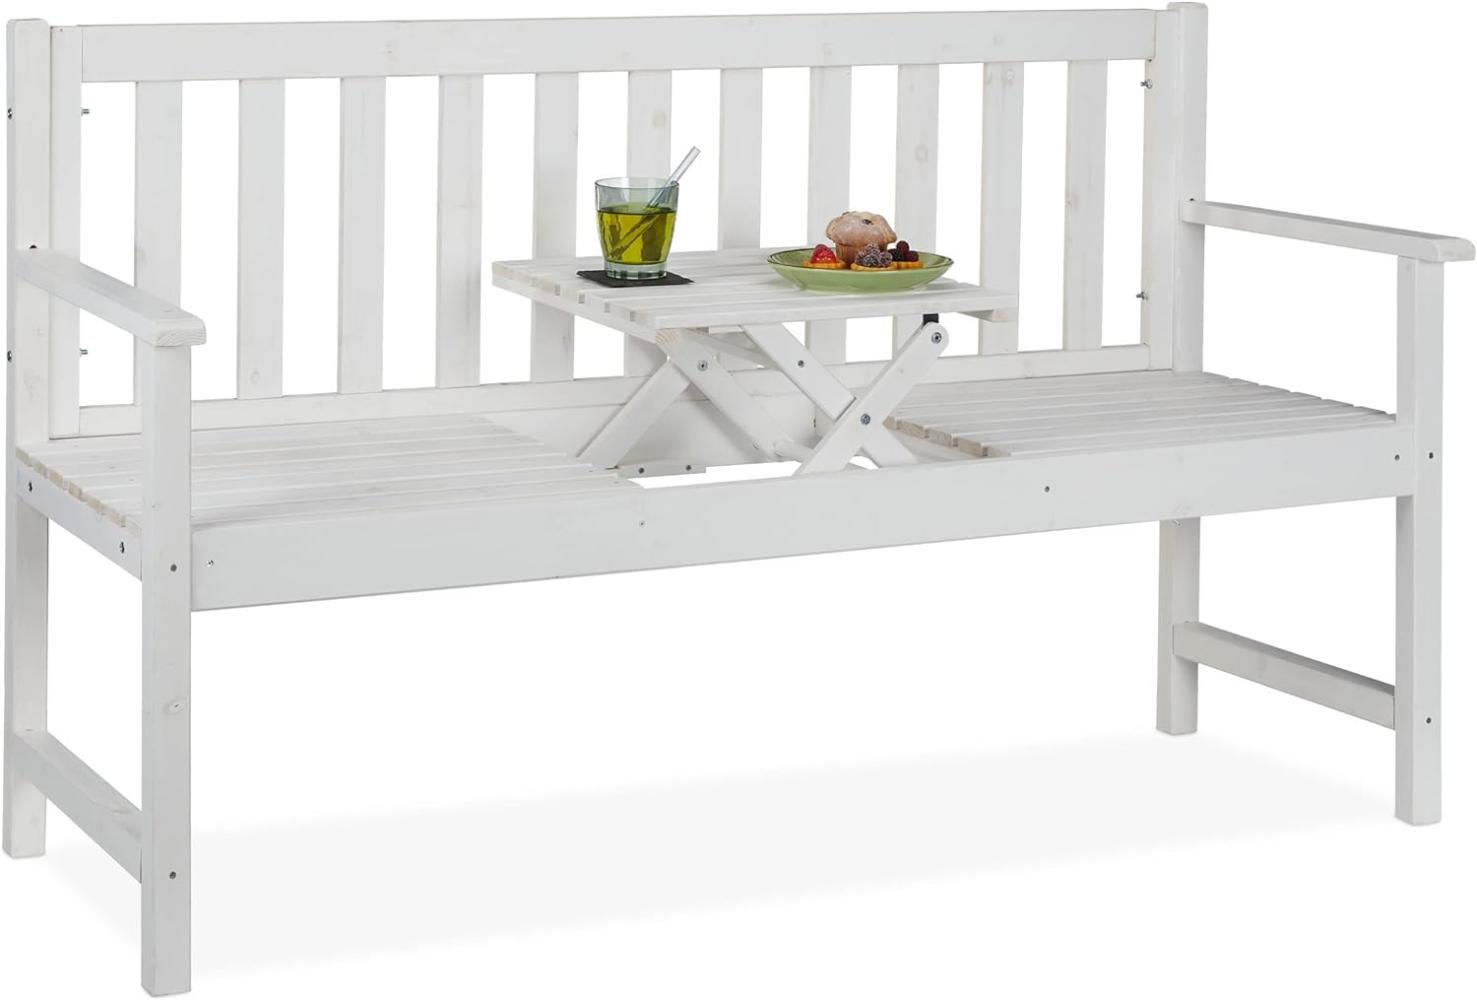 Relaxdays Gartenbank mit integriertem Tisch, 3 Sitzer, robuste Holz Sitzbank, Garten & Balkon, HBT: 90x152x56 cm, weiß Bild 1